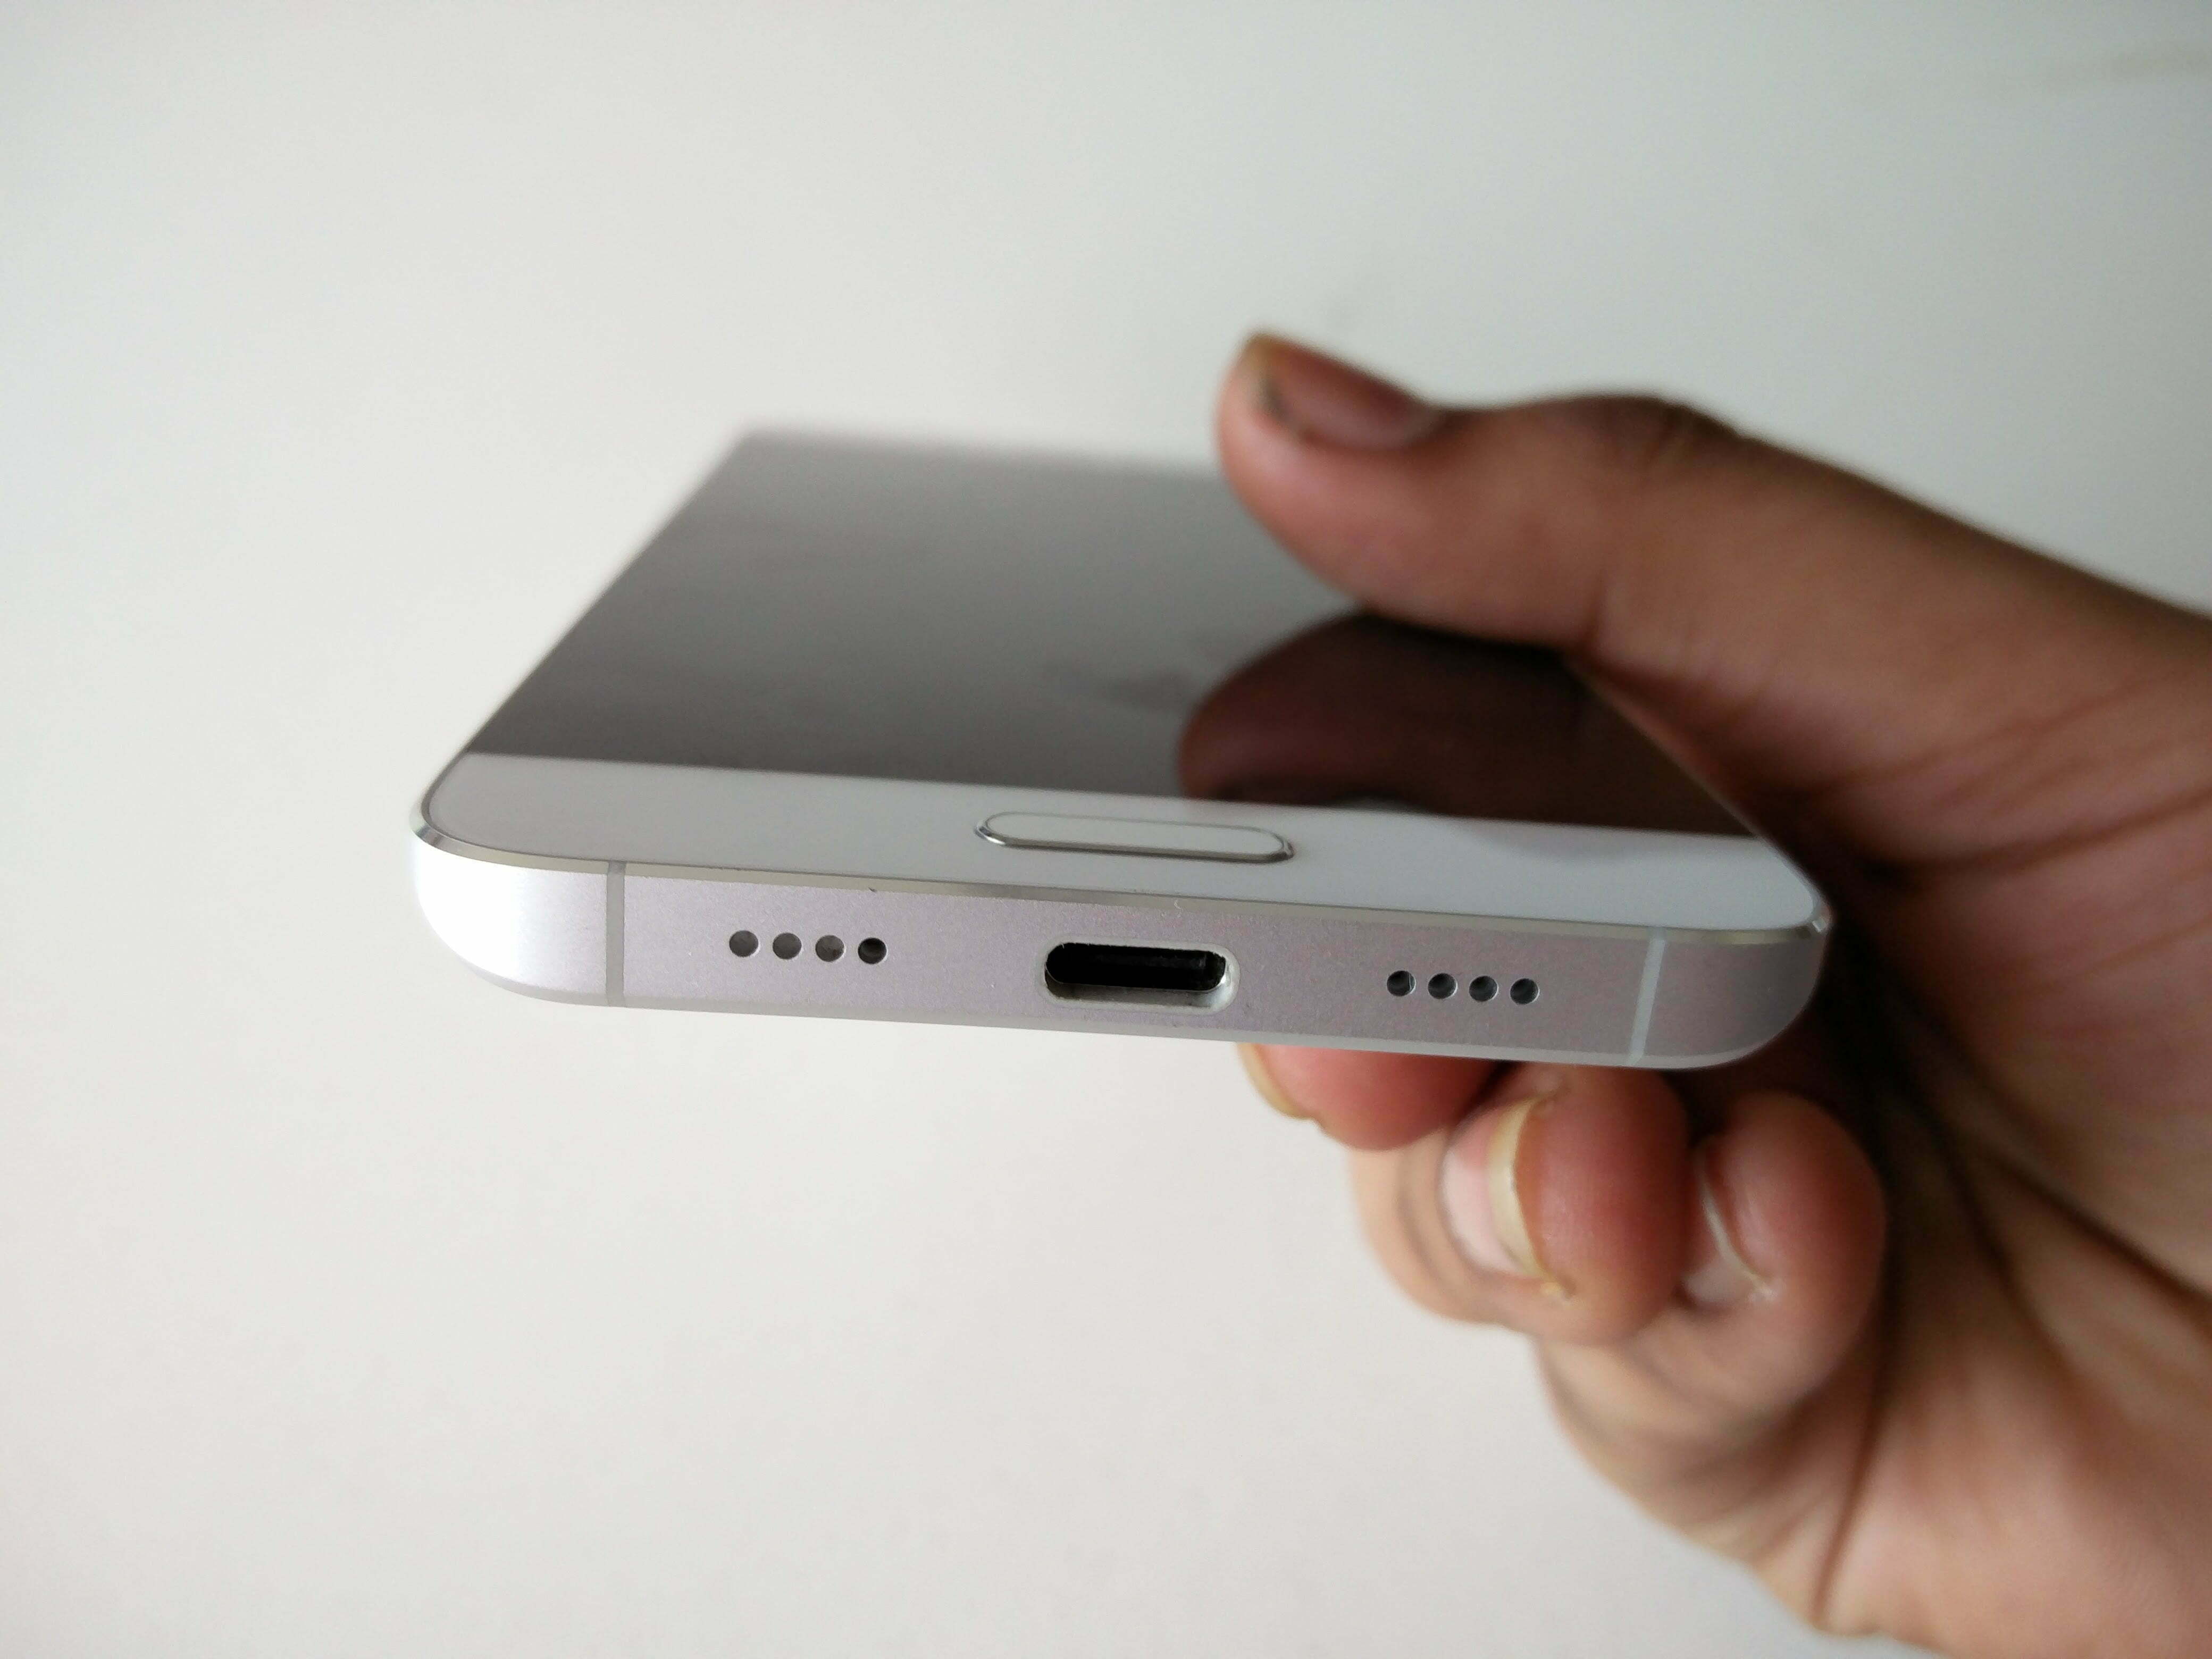 Hands on Xiaomi Mi 5 techturismo